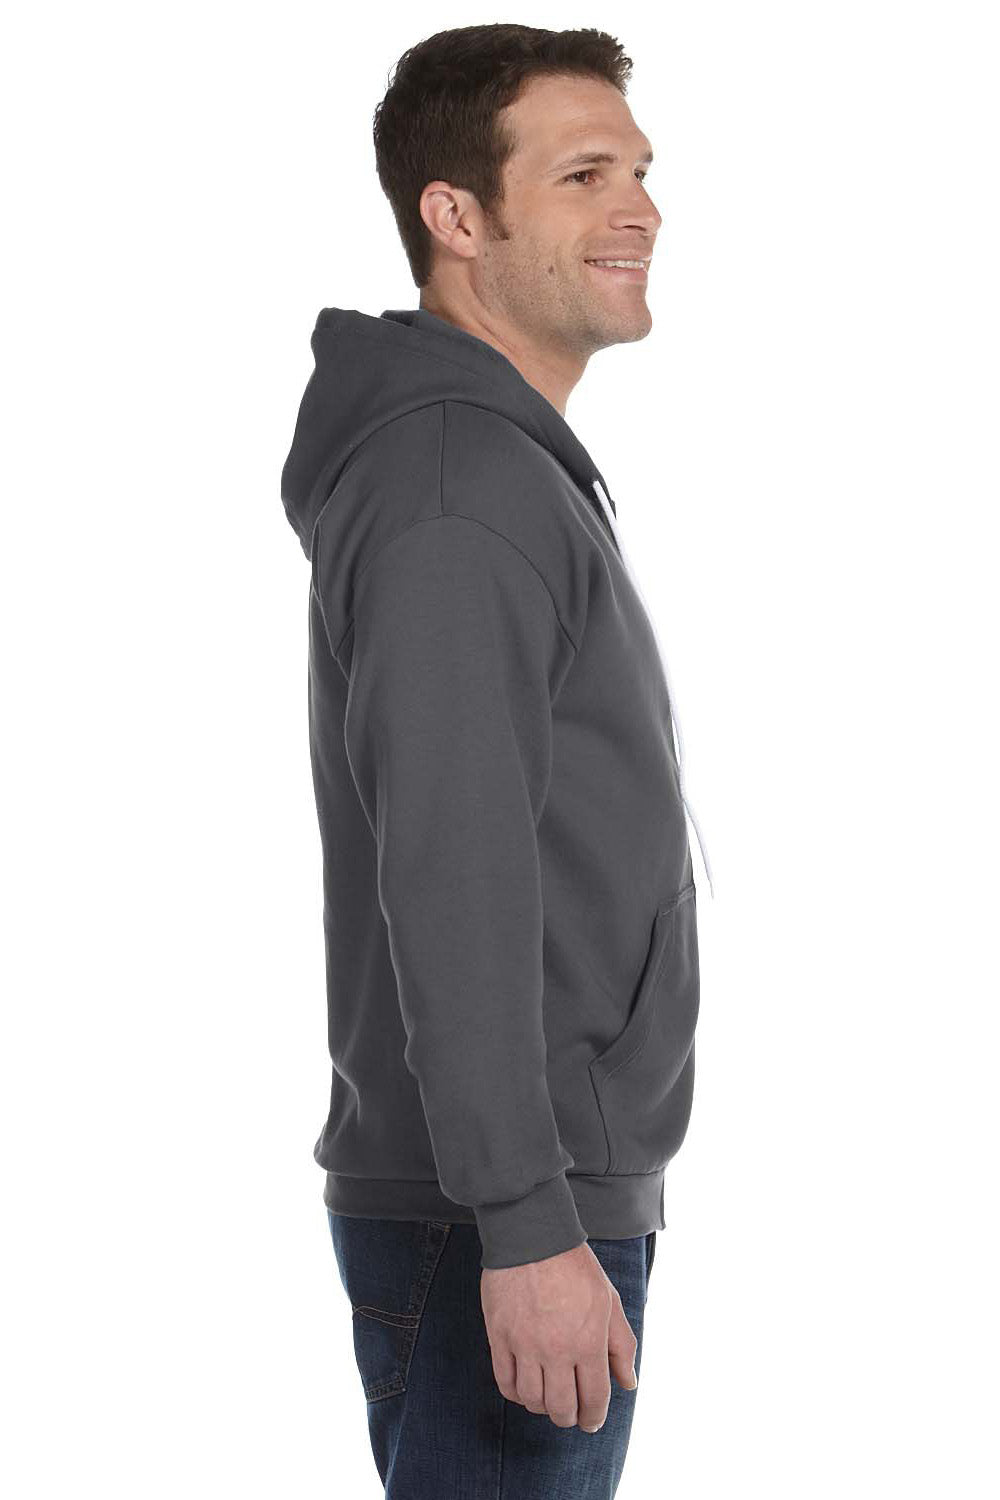 Anvil 71600 Mens Fleece Full Zip Hooded Sweatshirt Hoodie Charcoal Grey Side